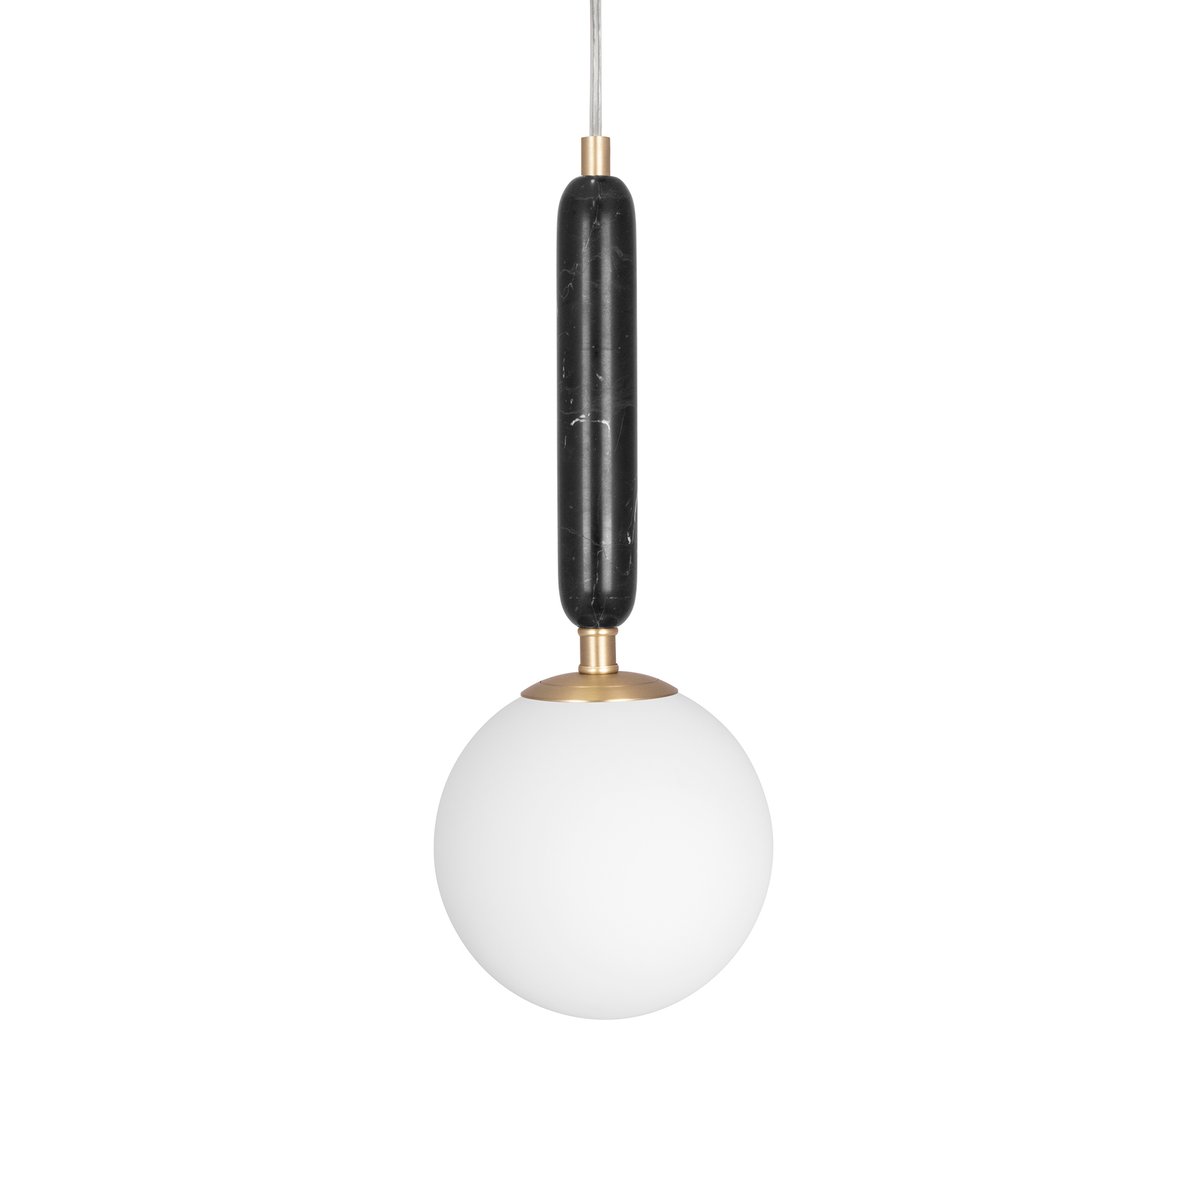 Globen Lighting Torrano hanglamp 15 cm Zwart